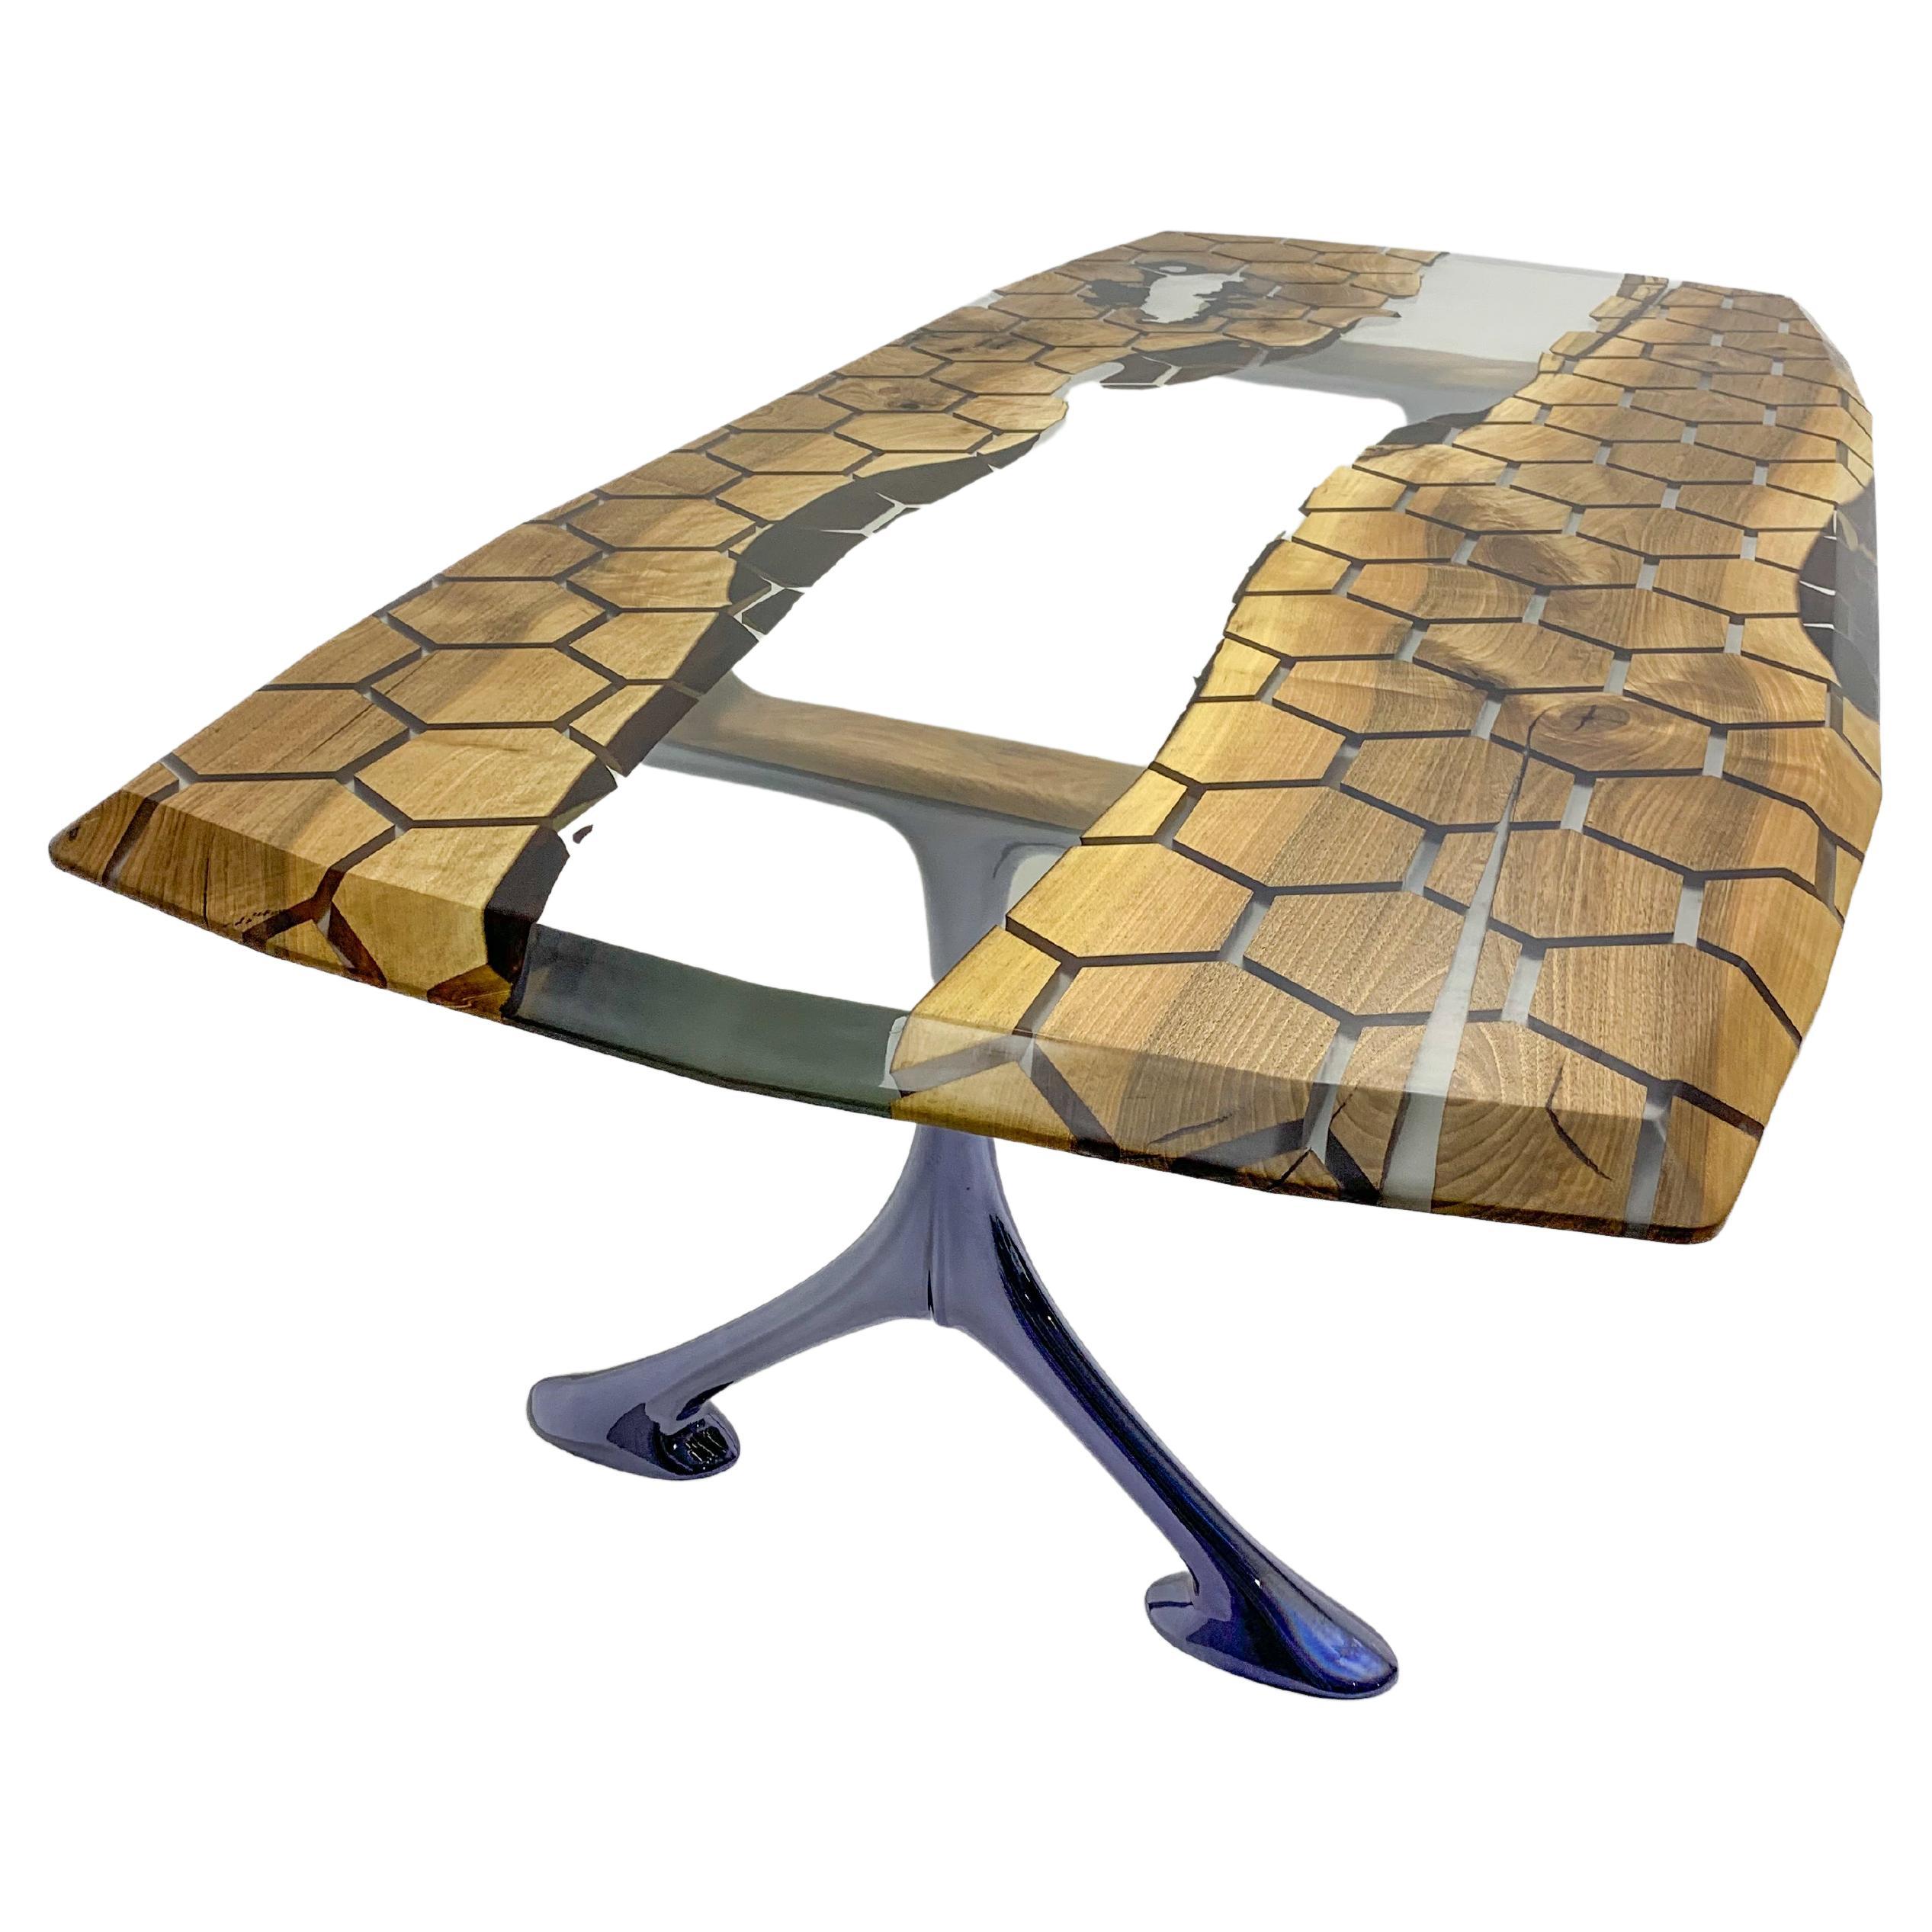 TABLE ÉPOXY HEXAGONALE 

Des tailles et des couleurs personnalisées sont disponibles !

Cette table en époxy émerge comme une œuvre d'art unique, inspirée par la beauté de la nature. Avec son motif en nid d'abeille et ses formes hexagonales, il